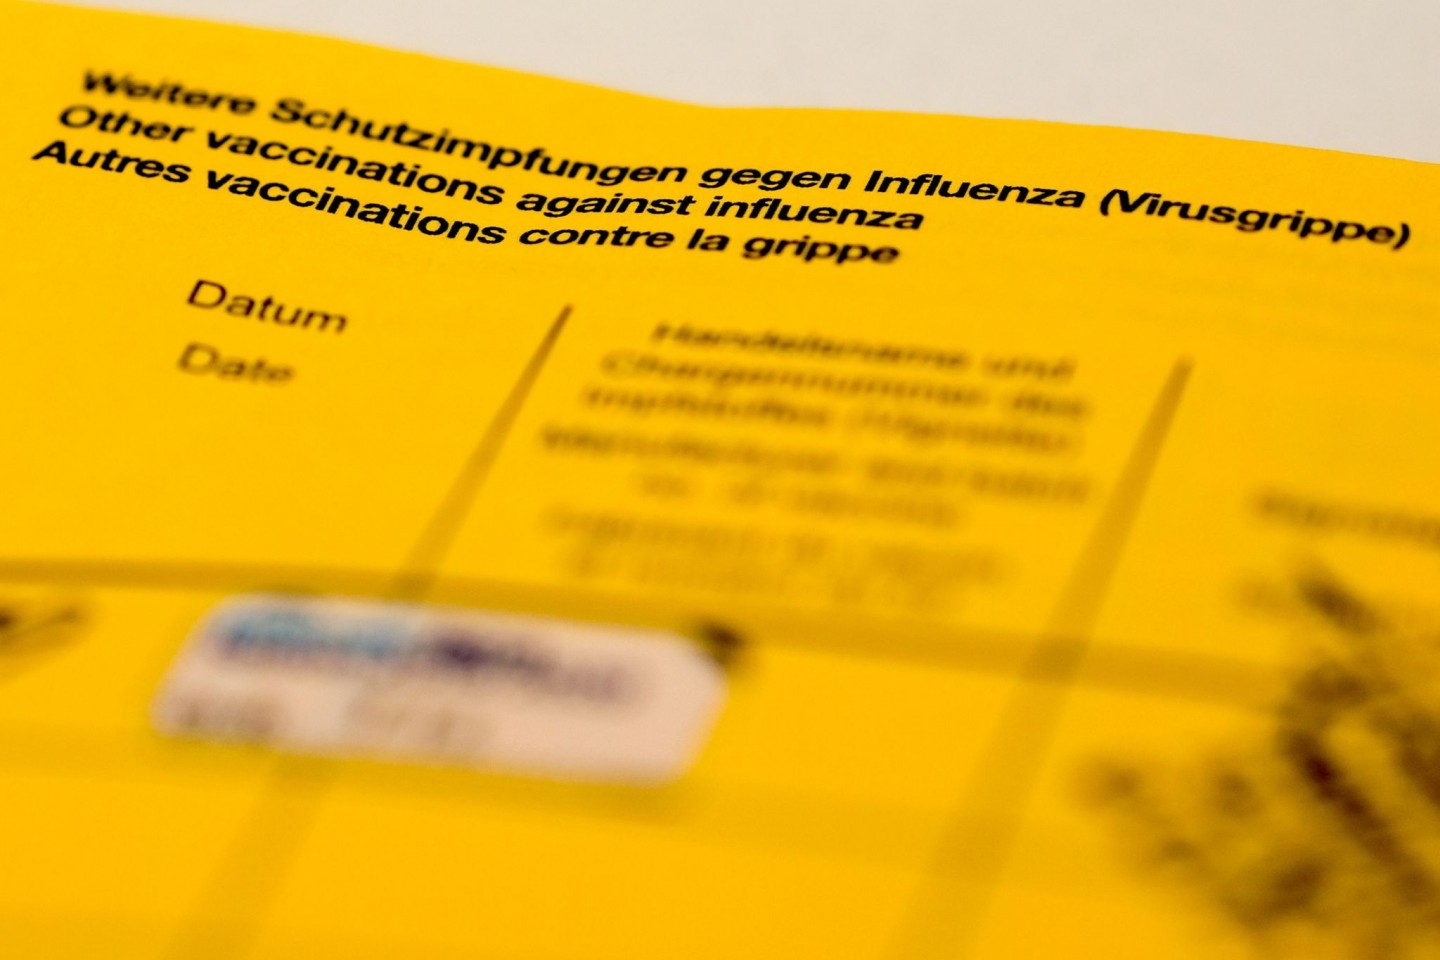 Ein Impfbuch mit den Feldern für die Impfung gegen Influenza (Virusgrippe).